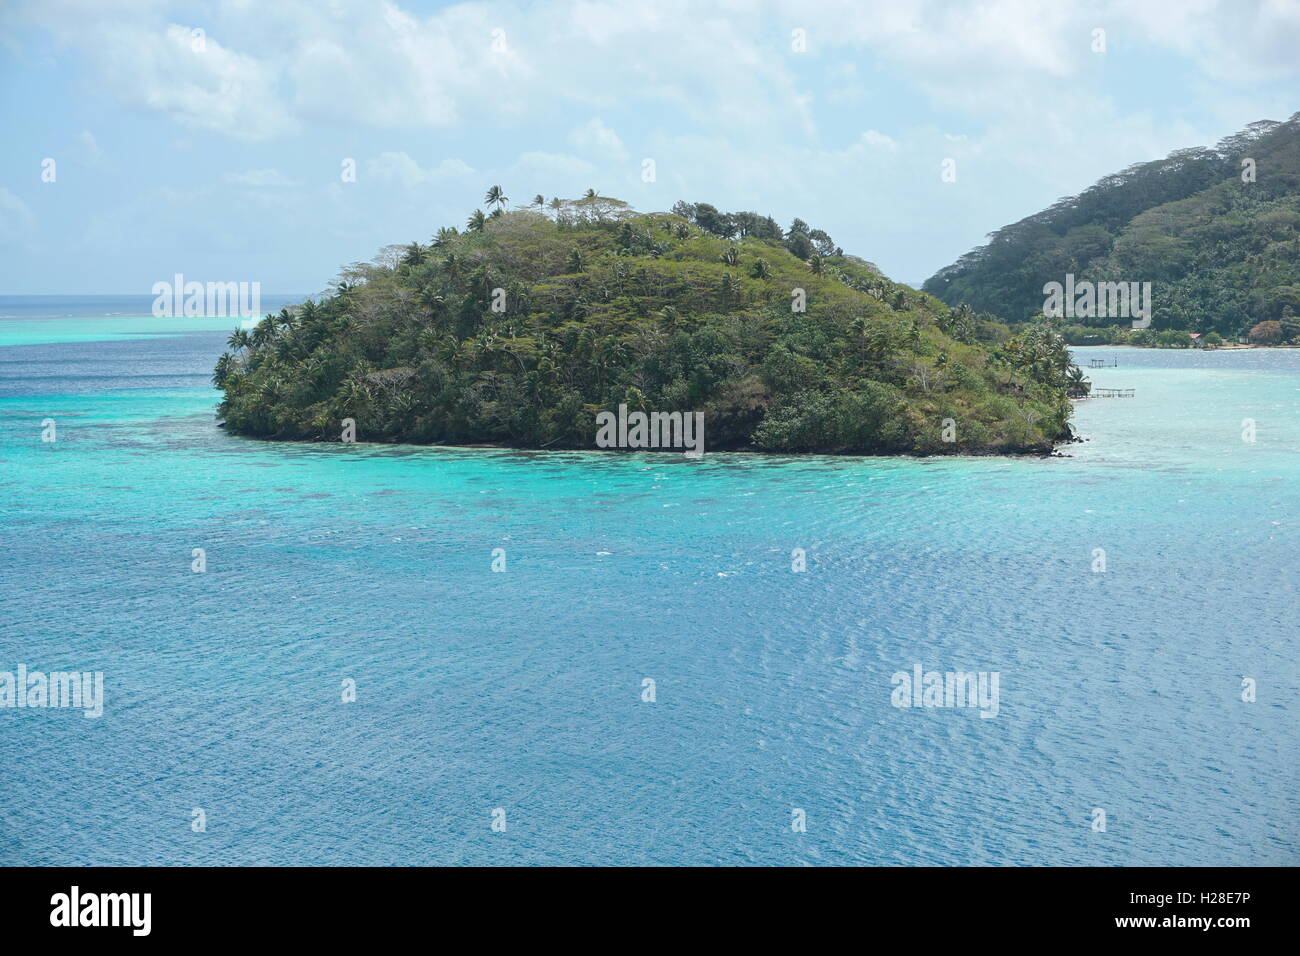 Vue de haut d'une île tropicale à la végétation luxuriante, Lagon de Huahine, motu Vaiorea, Bourayne bay, l'océan Pacifique, Polynésie Française Banque D'Images